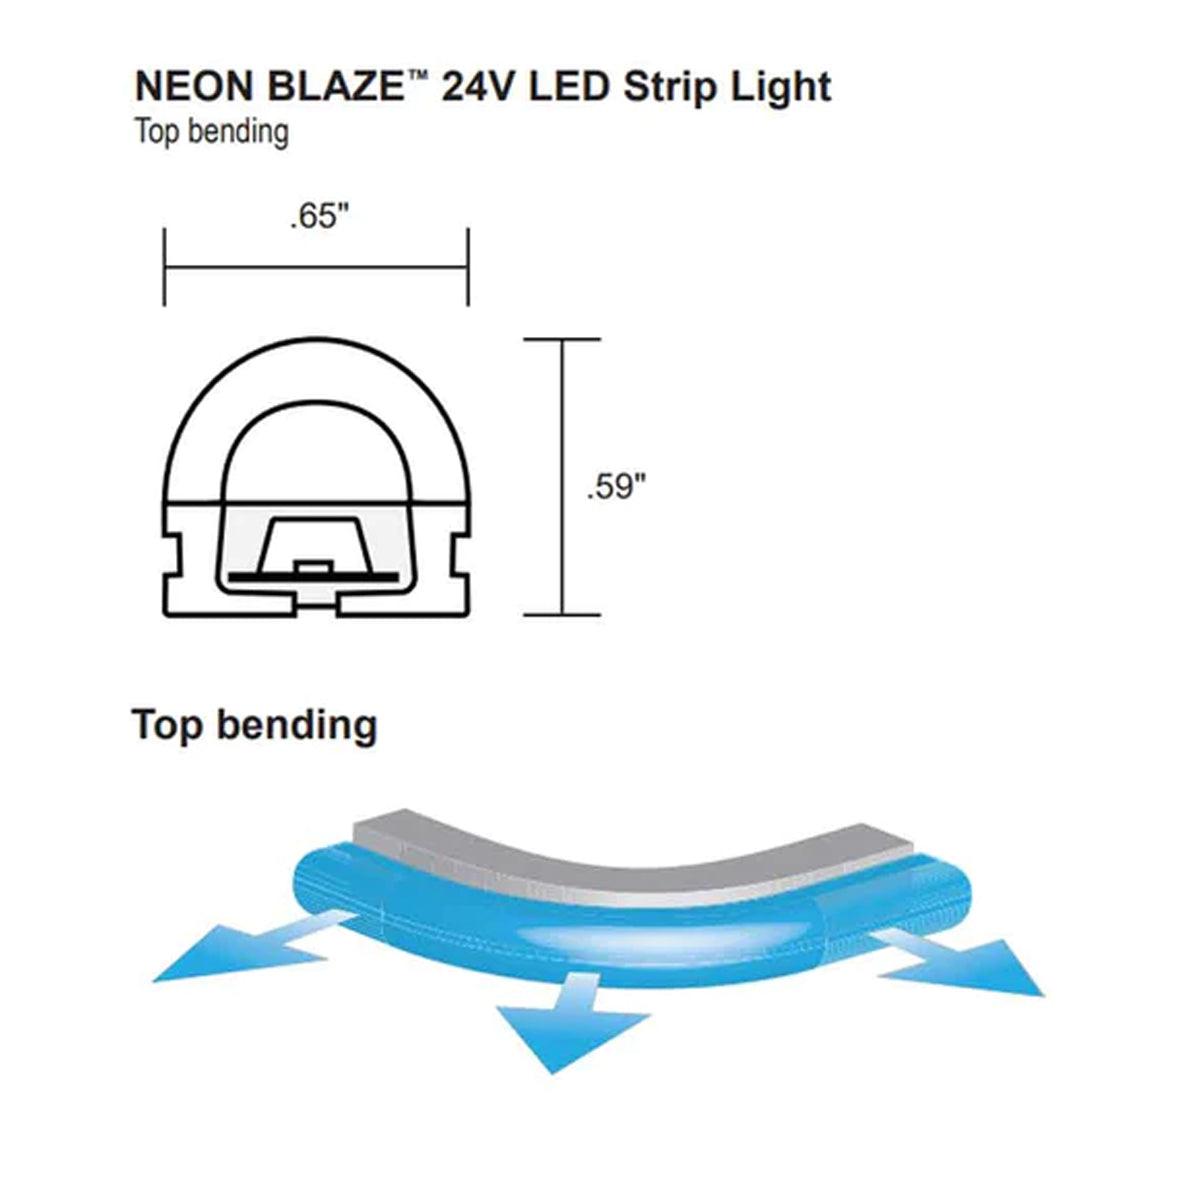 Neon BLAZE LED Neon Strip Light, Gold, 24V, Top Bending - Bees Lighting